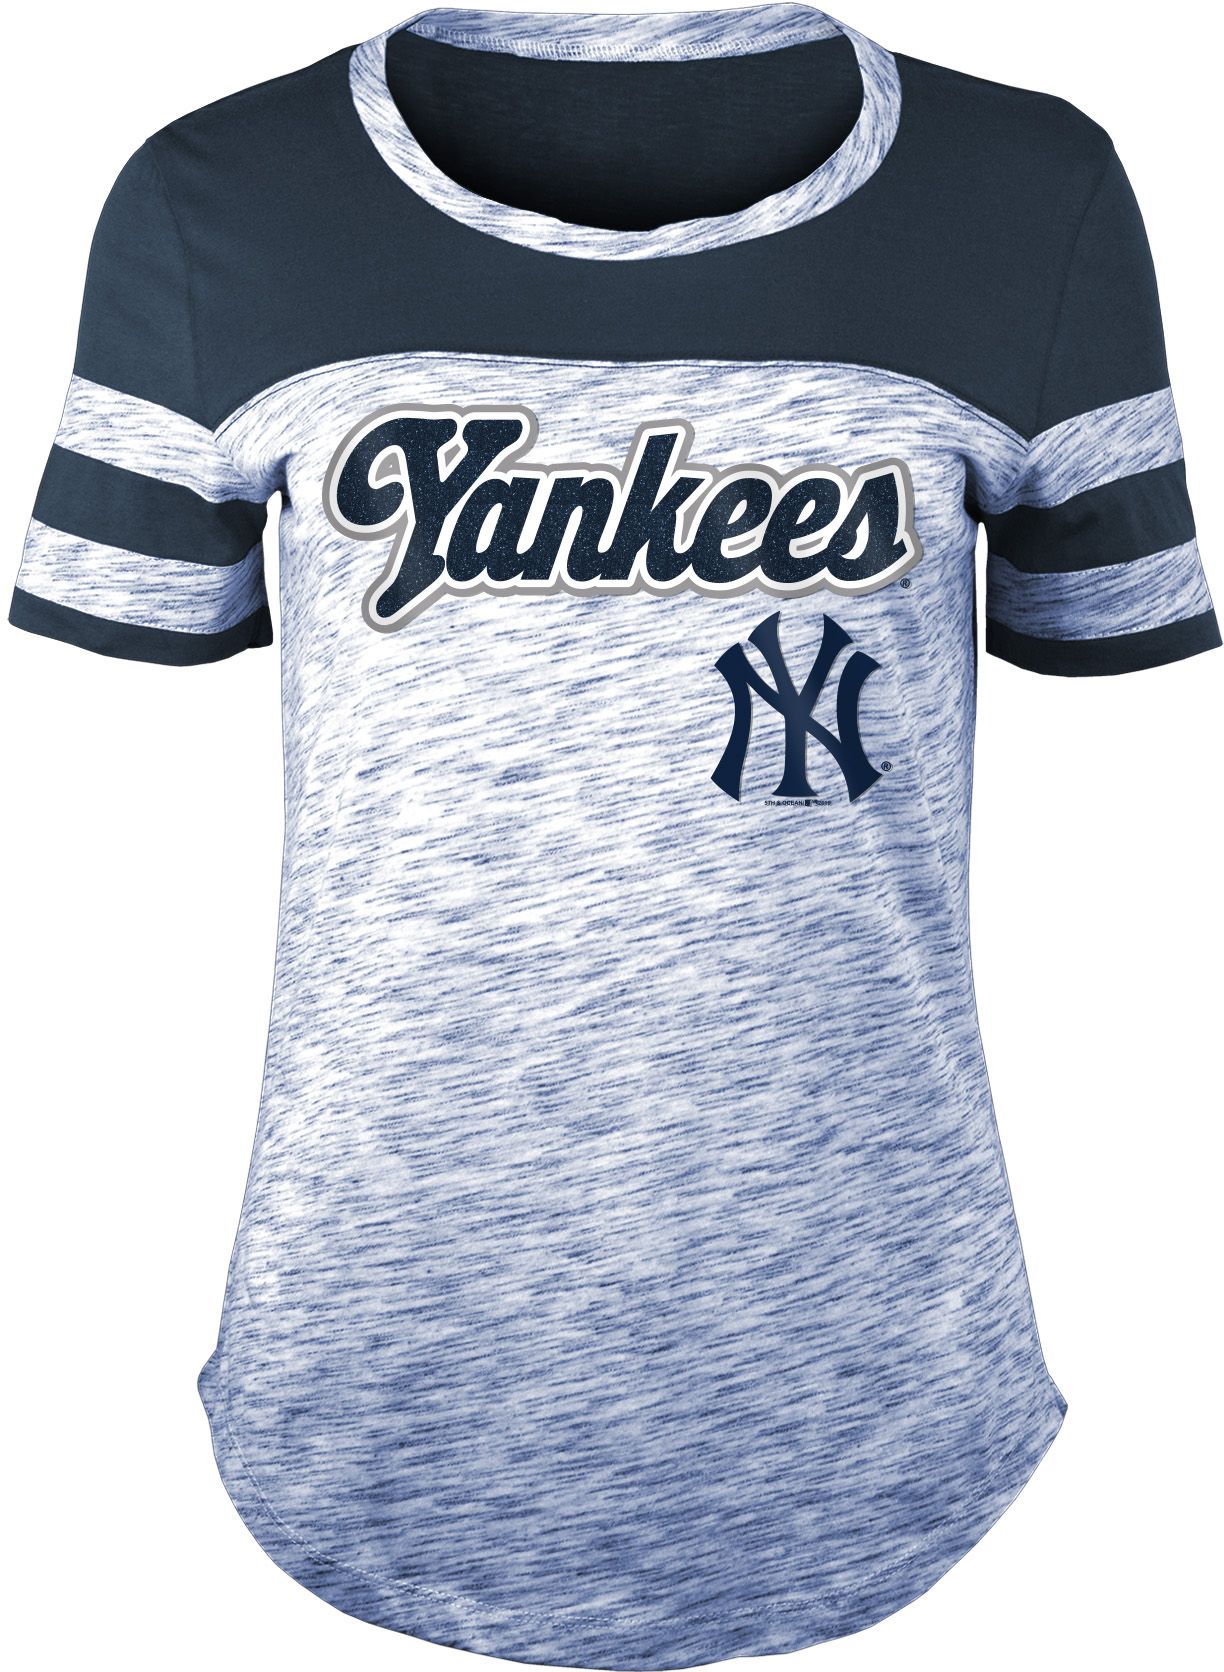 new york yankees t shirt women's